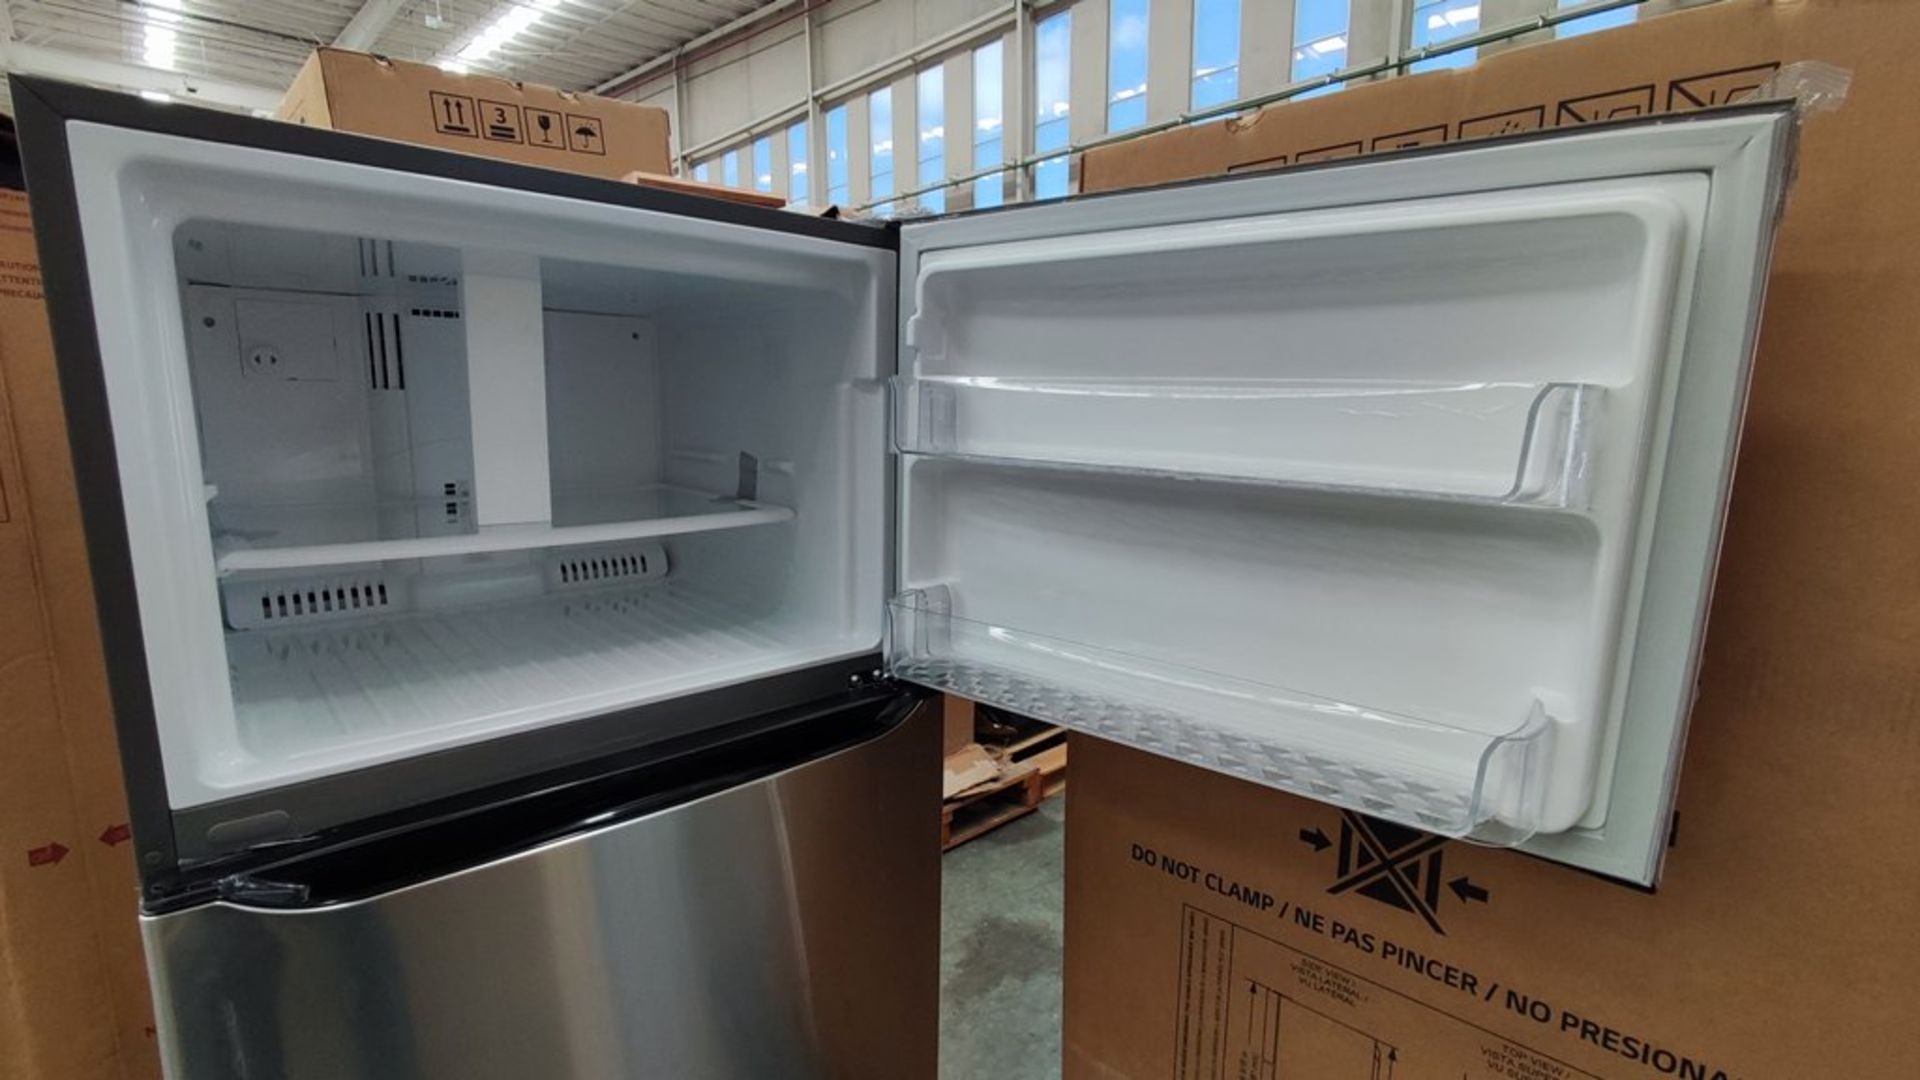 1 Refrigerador Marca LG, Modelo LT57BPSX, Serie 111MRVY3TY614, Color Gris, Favor de inspeccionar. ( - Image 7 of 11